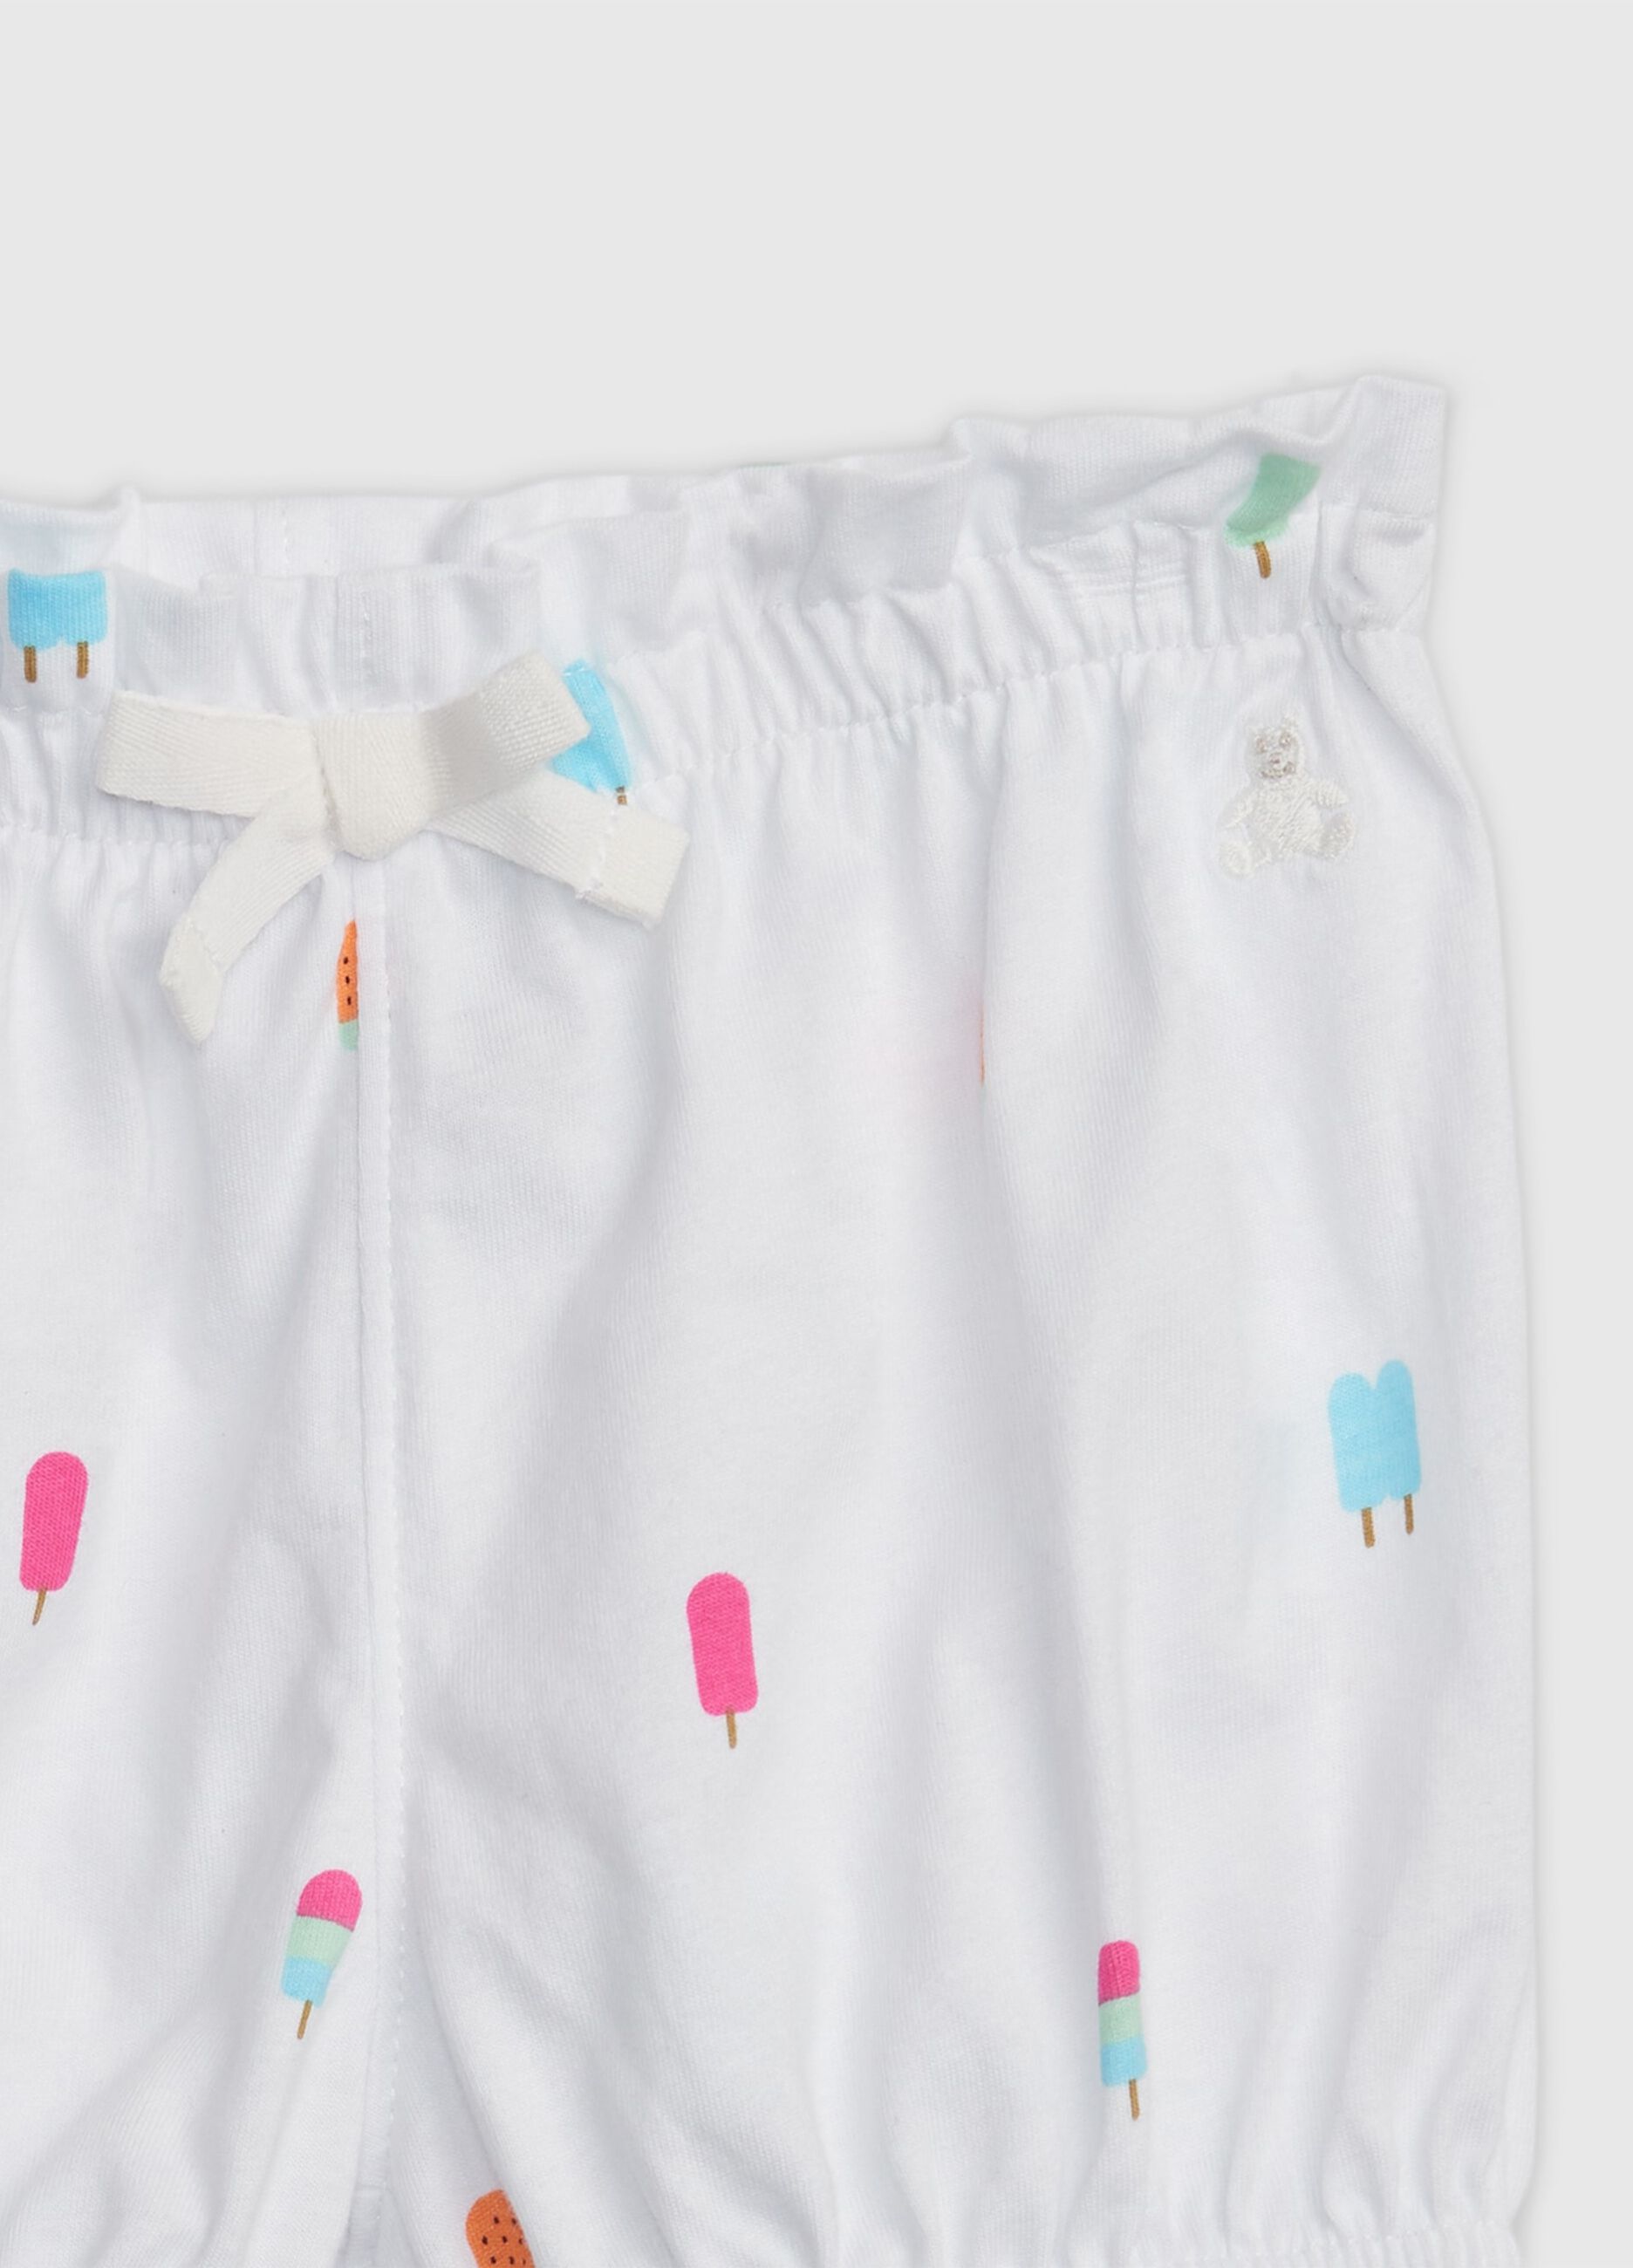 Shorts de algodón con estampado y bordado